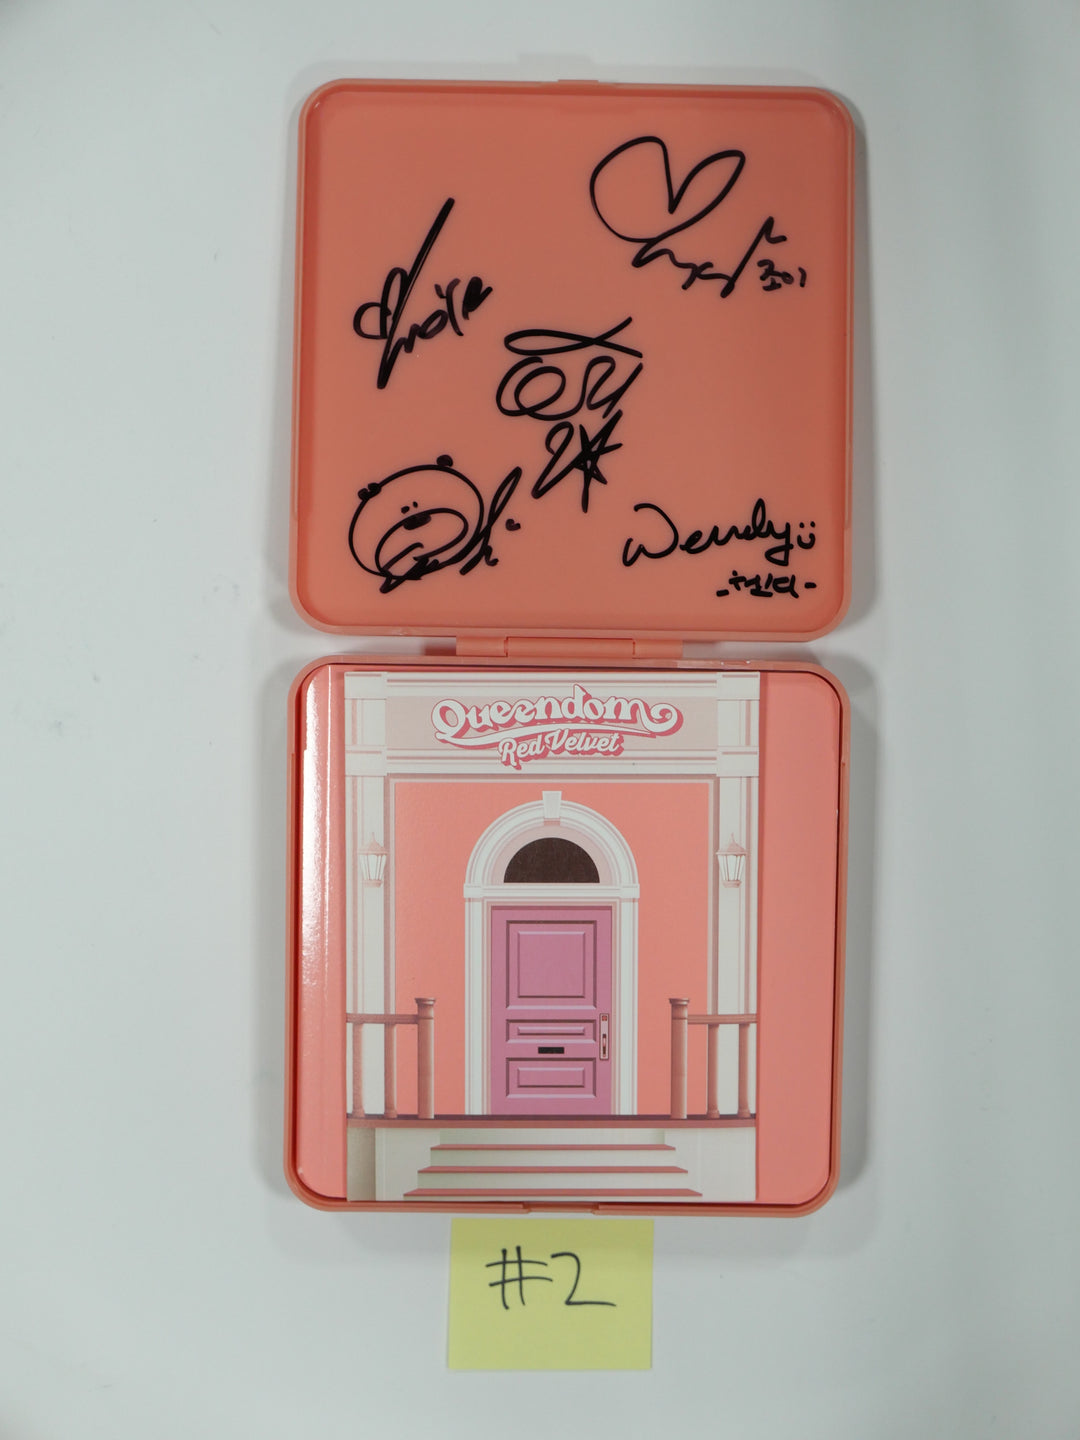 Red Velvet "Queendom" 6th Mini - Hand Autographed (Signed) Promo Album